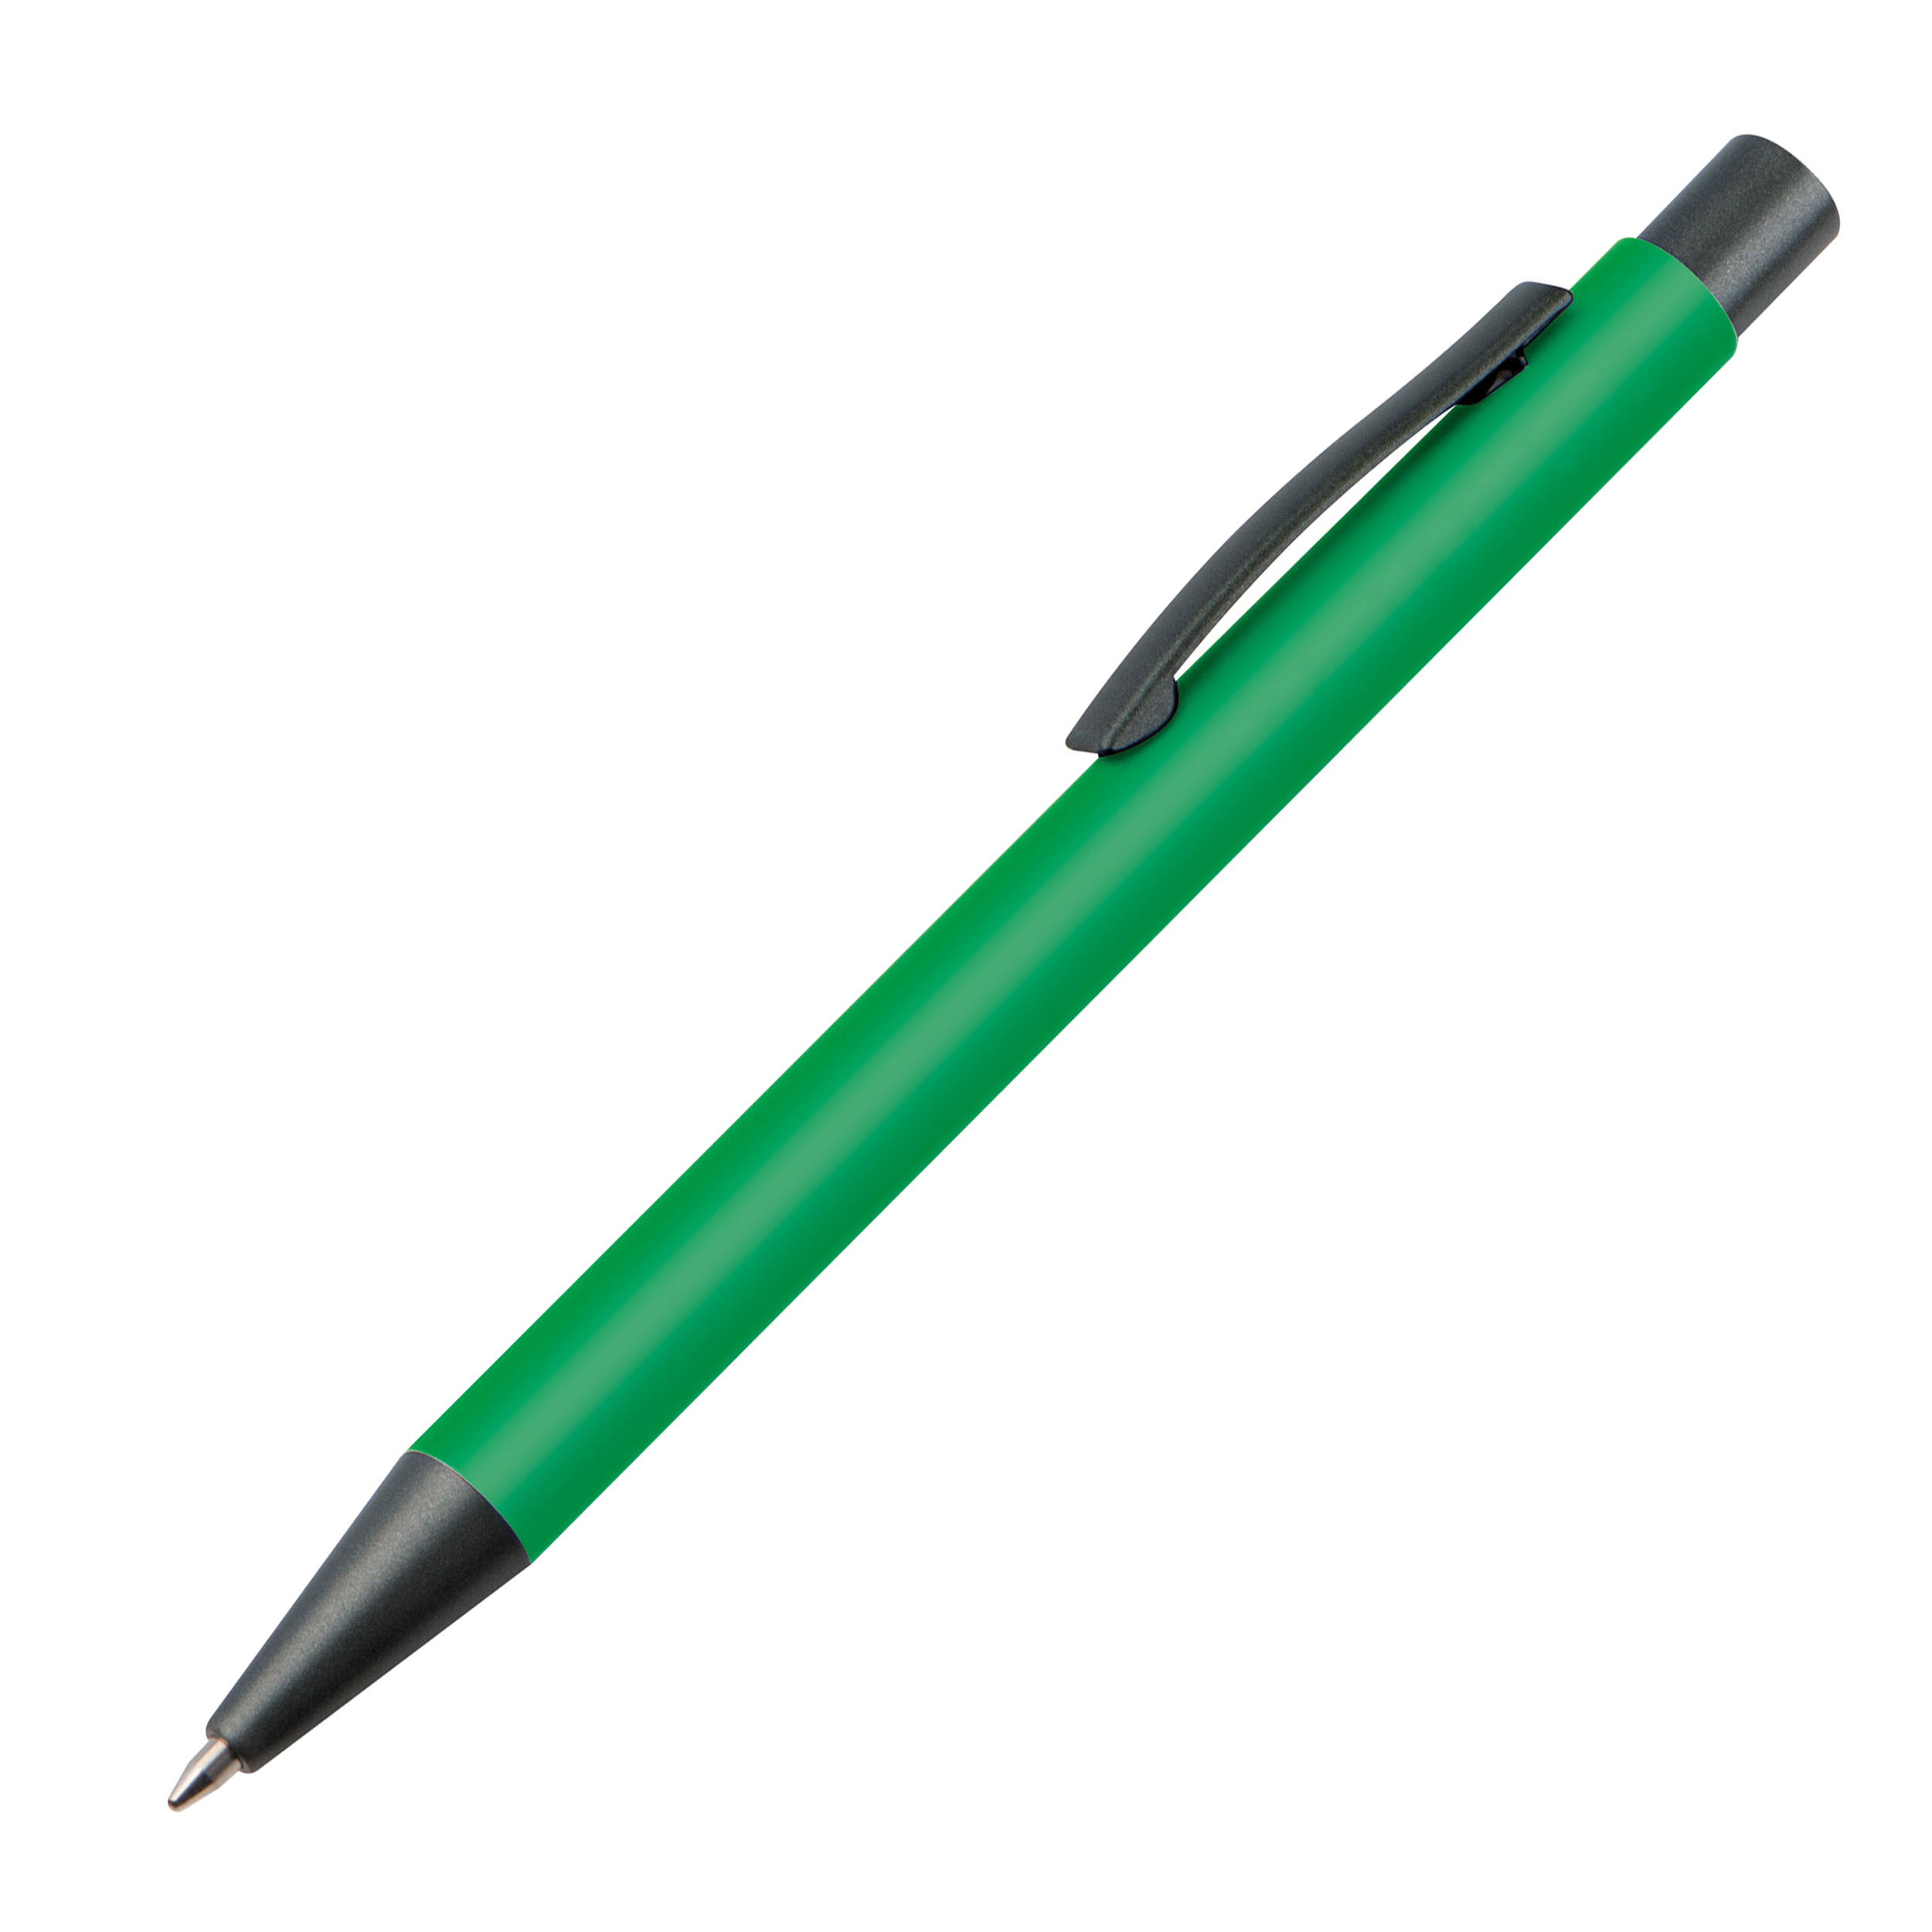 Bolígrafo de plástico con clip metálico.